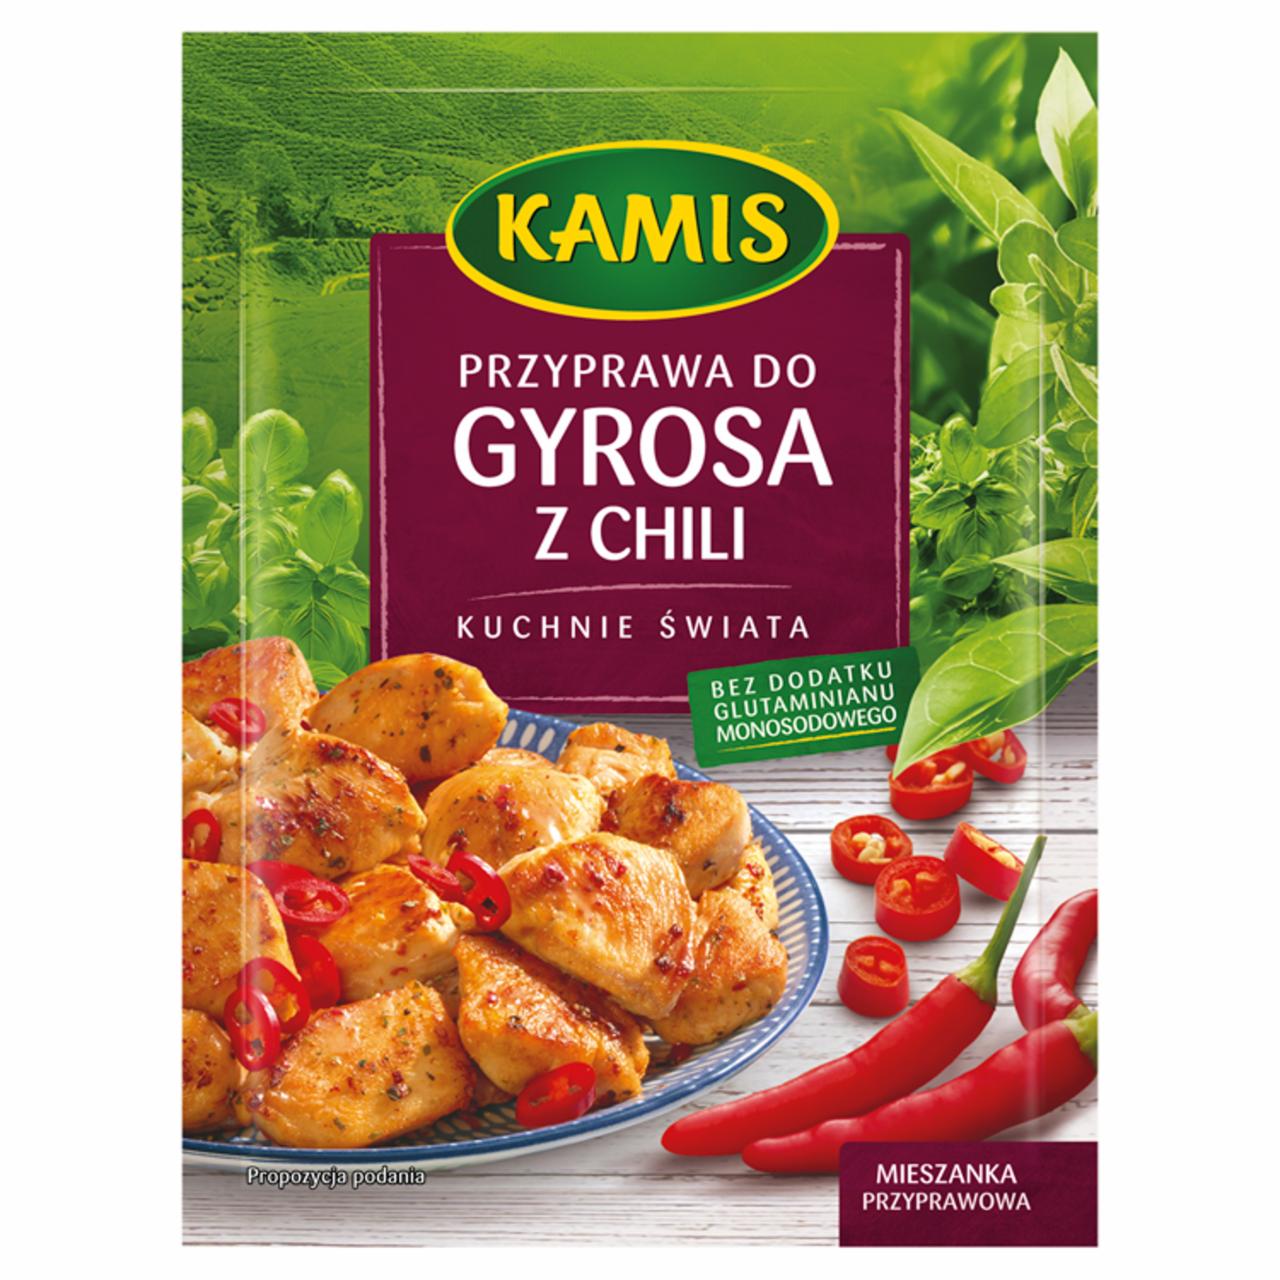 Zdjęcia - Kamis Kuchnie świata Przyprawa do gyrosa z chili Mieszanka przyprawowa 30 g